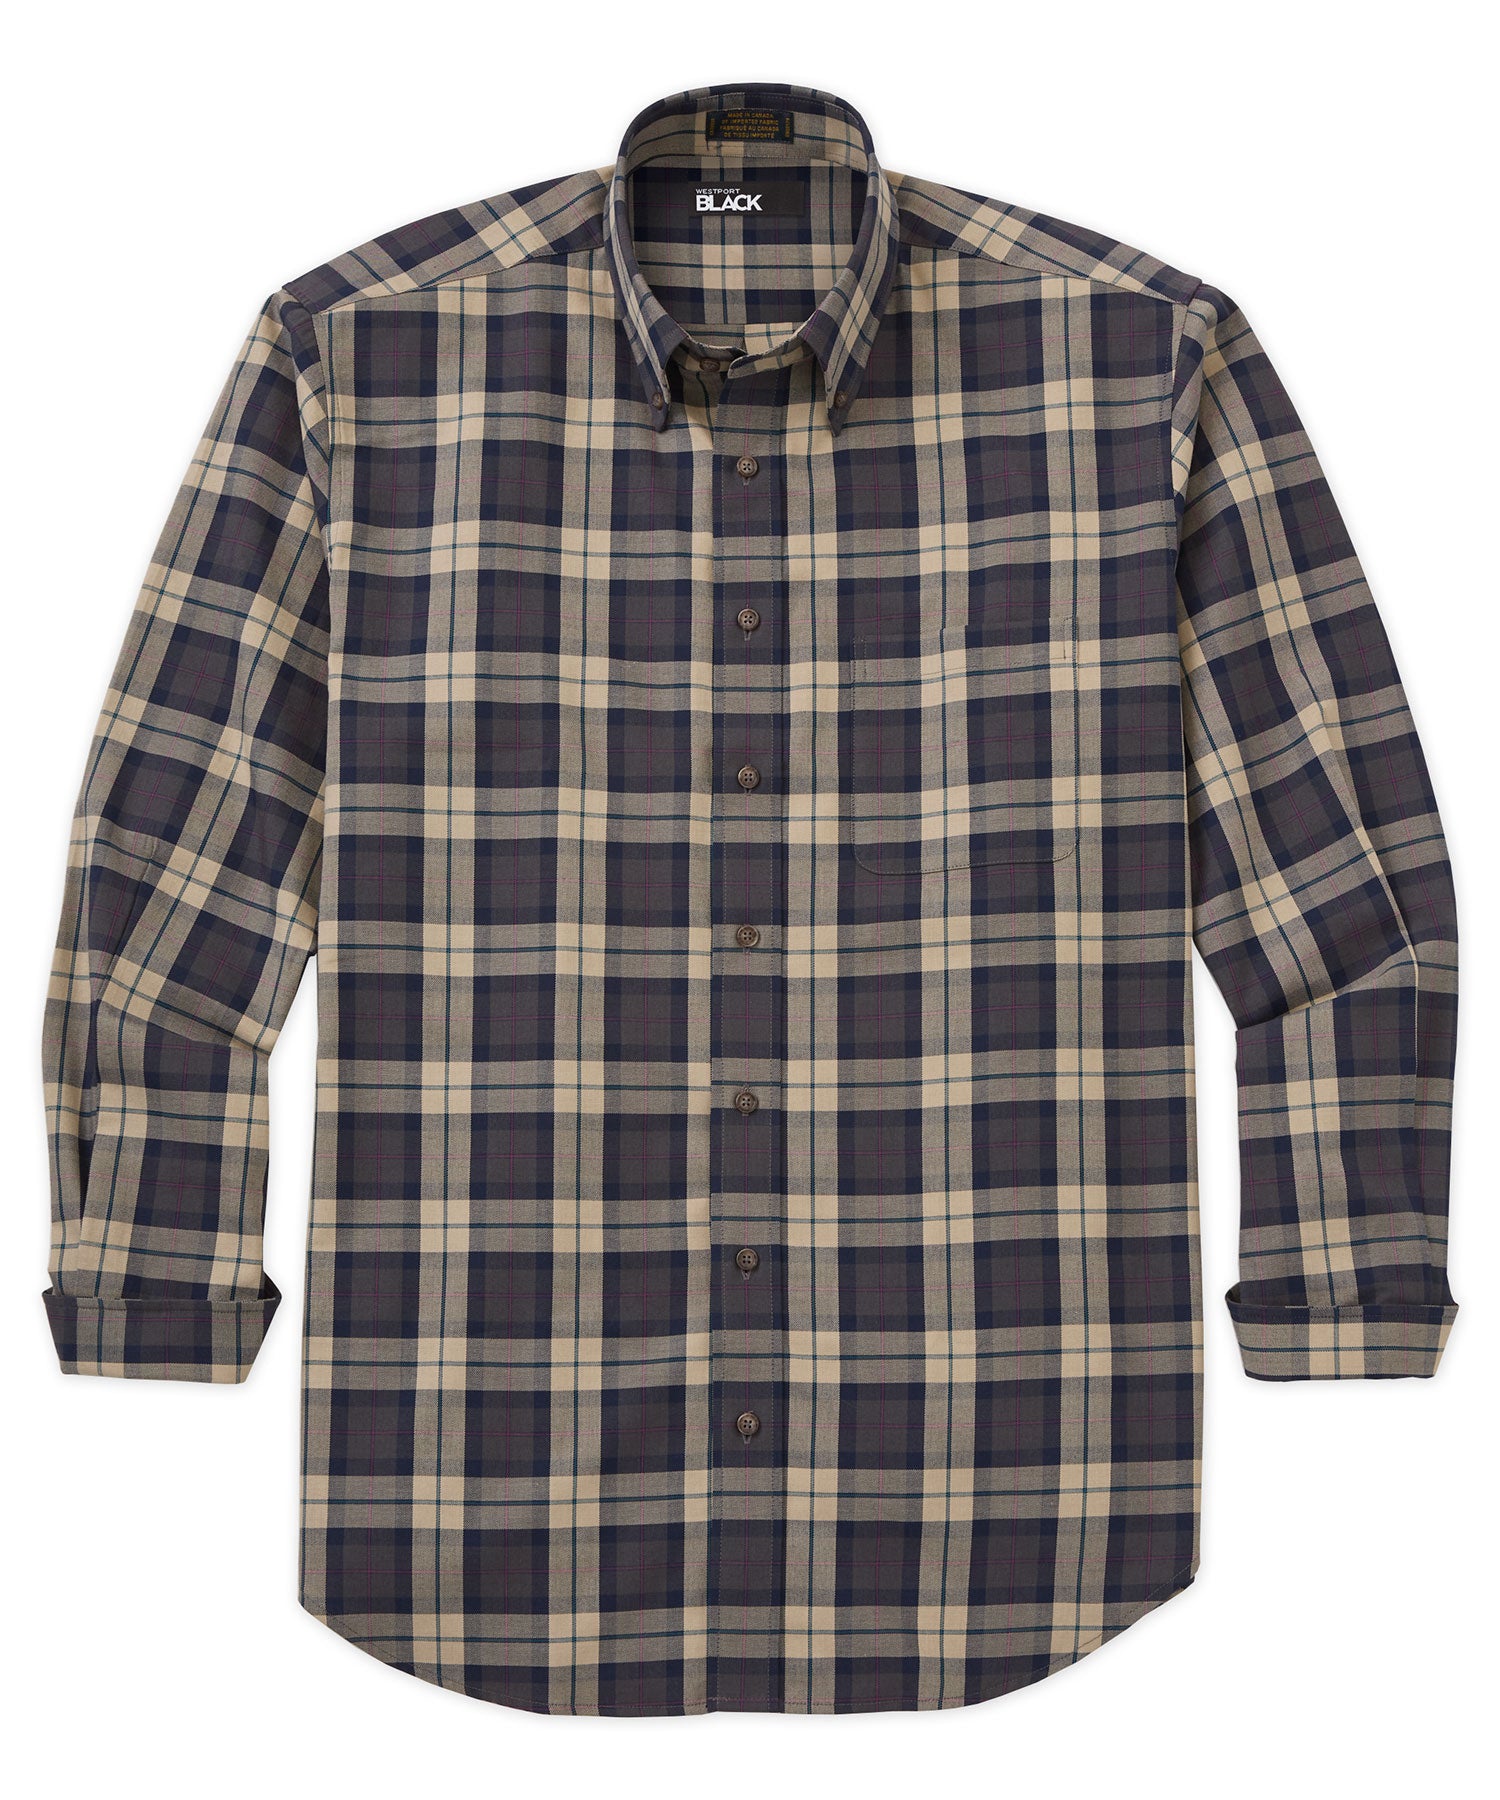 Westport Black Long Sleeve Cotton-Wool Sport Shirt